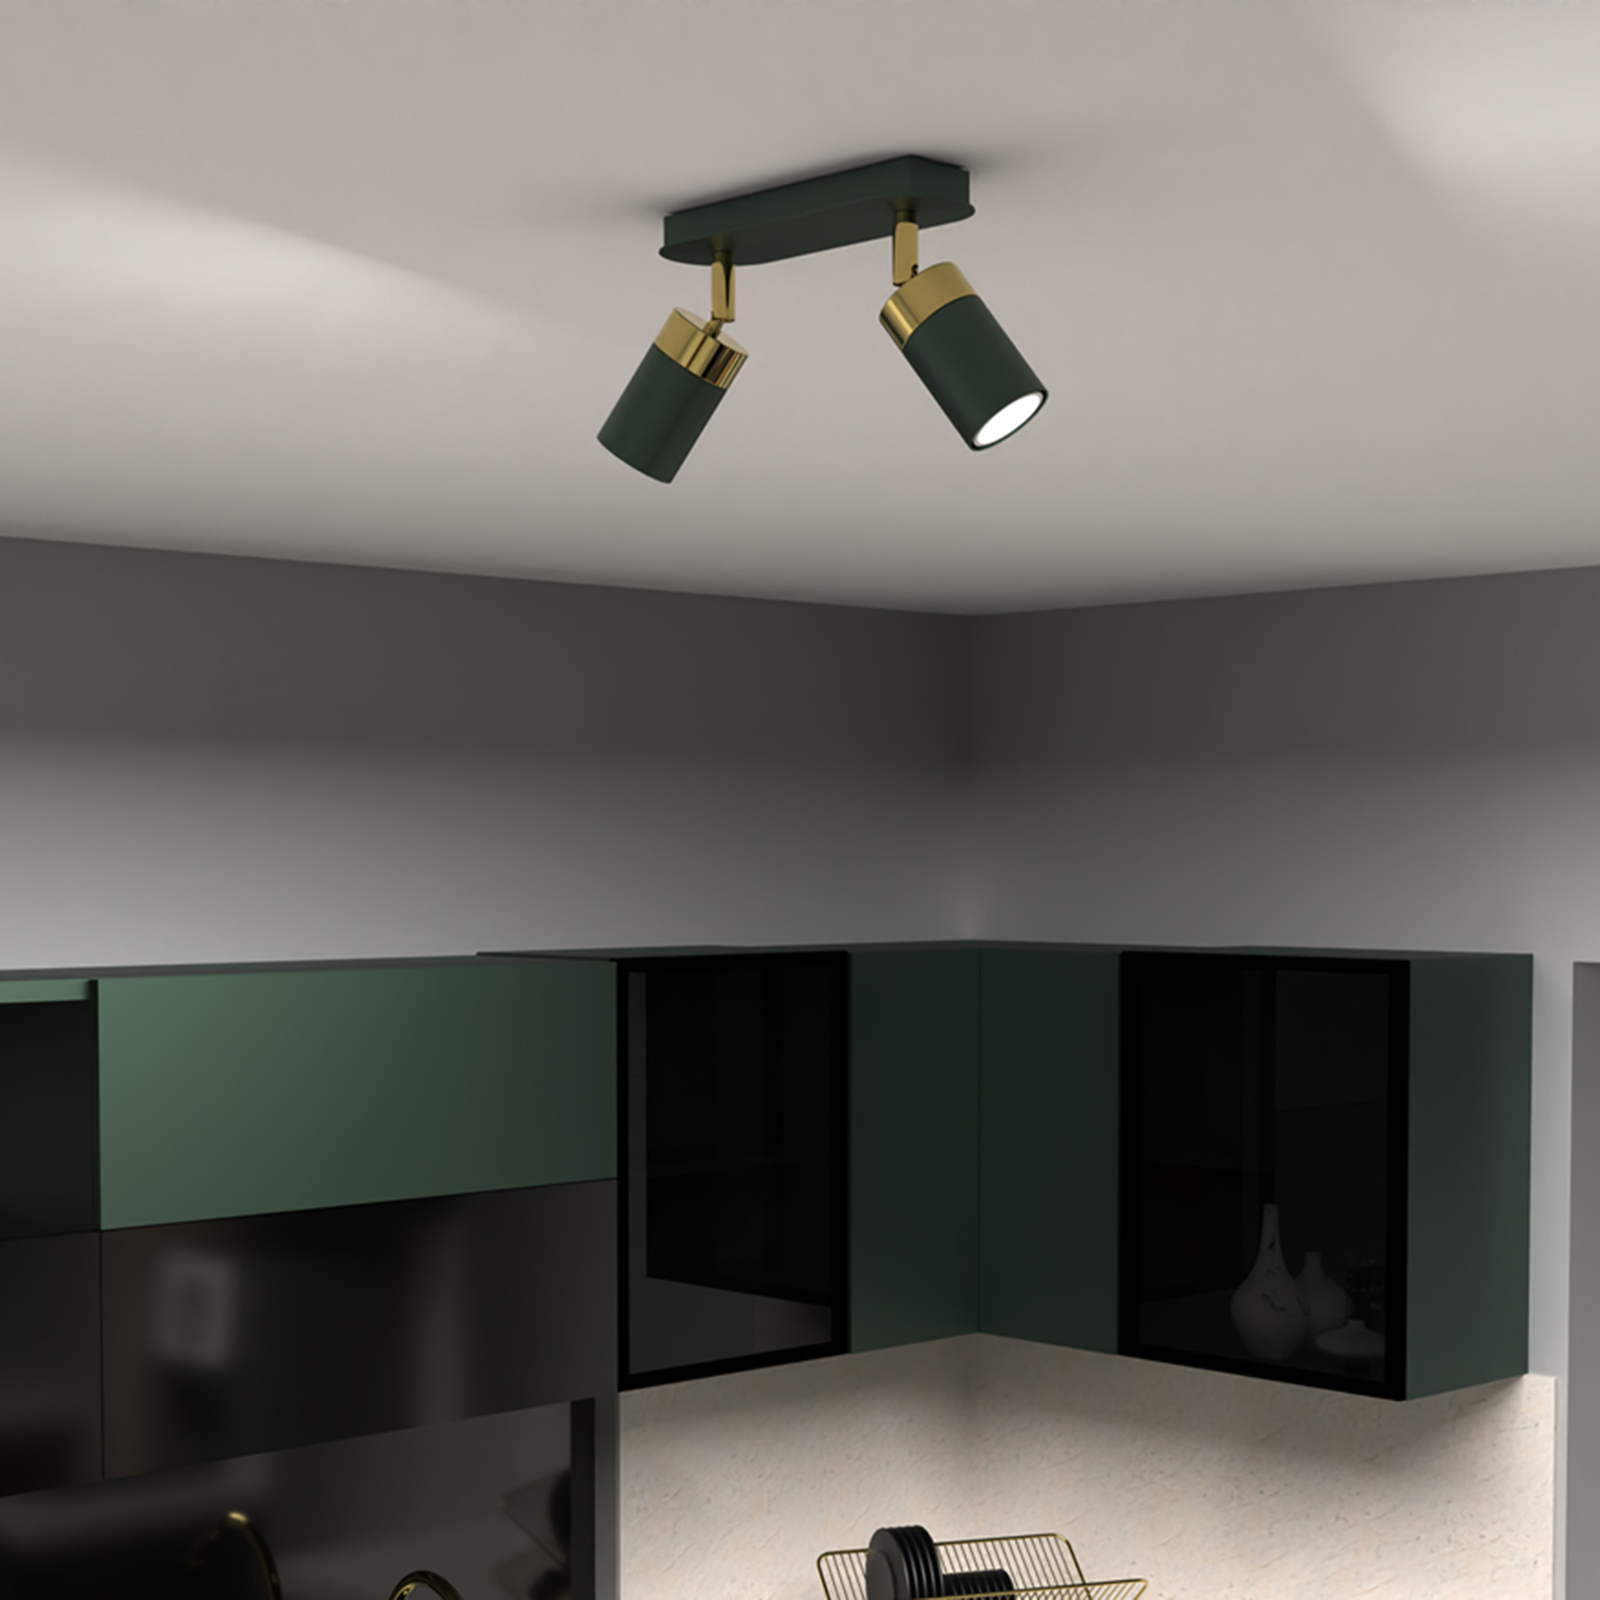 Прожектор за таван Joker, зелен/златен, с две горелки